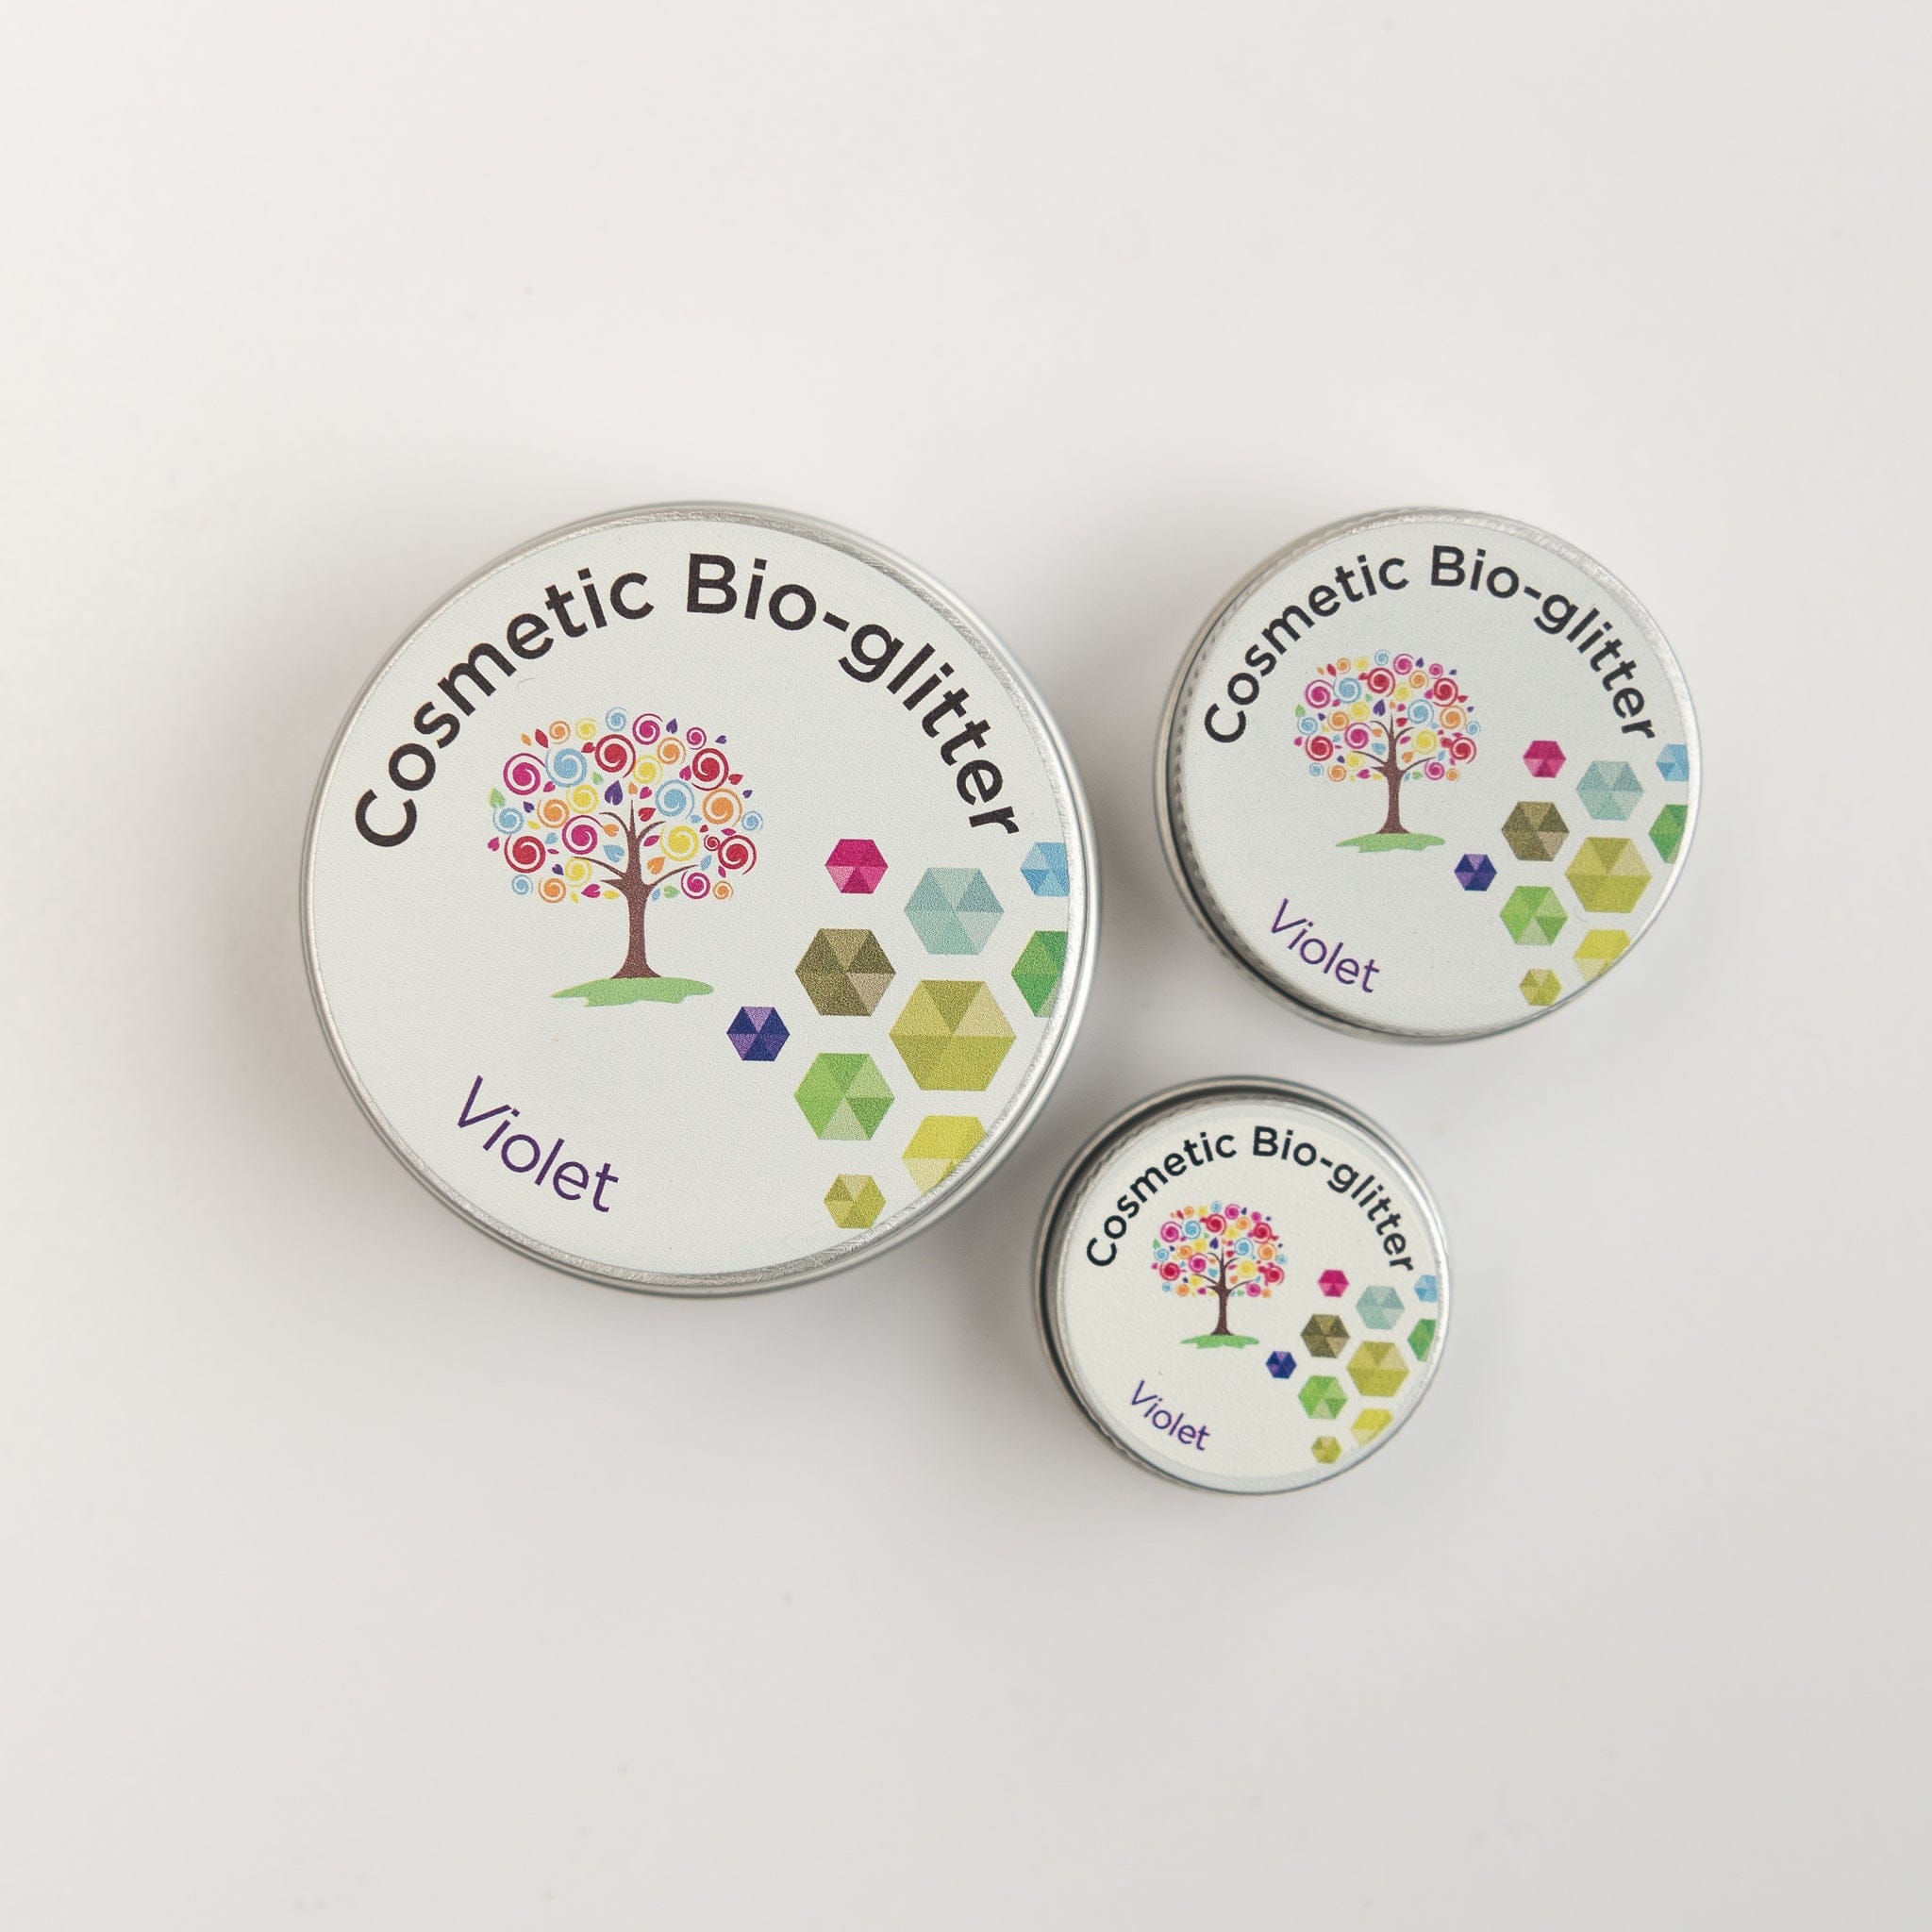 Violet - Biodegradable Glitter (Mini Flakes)